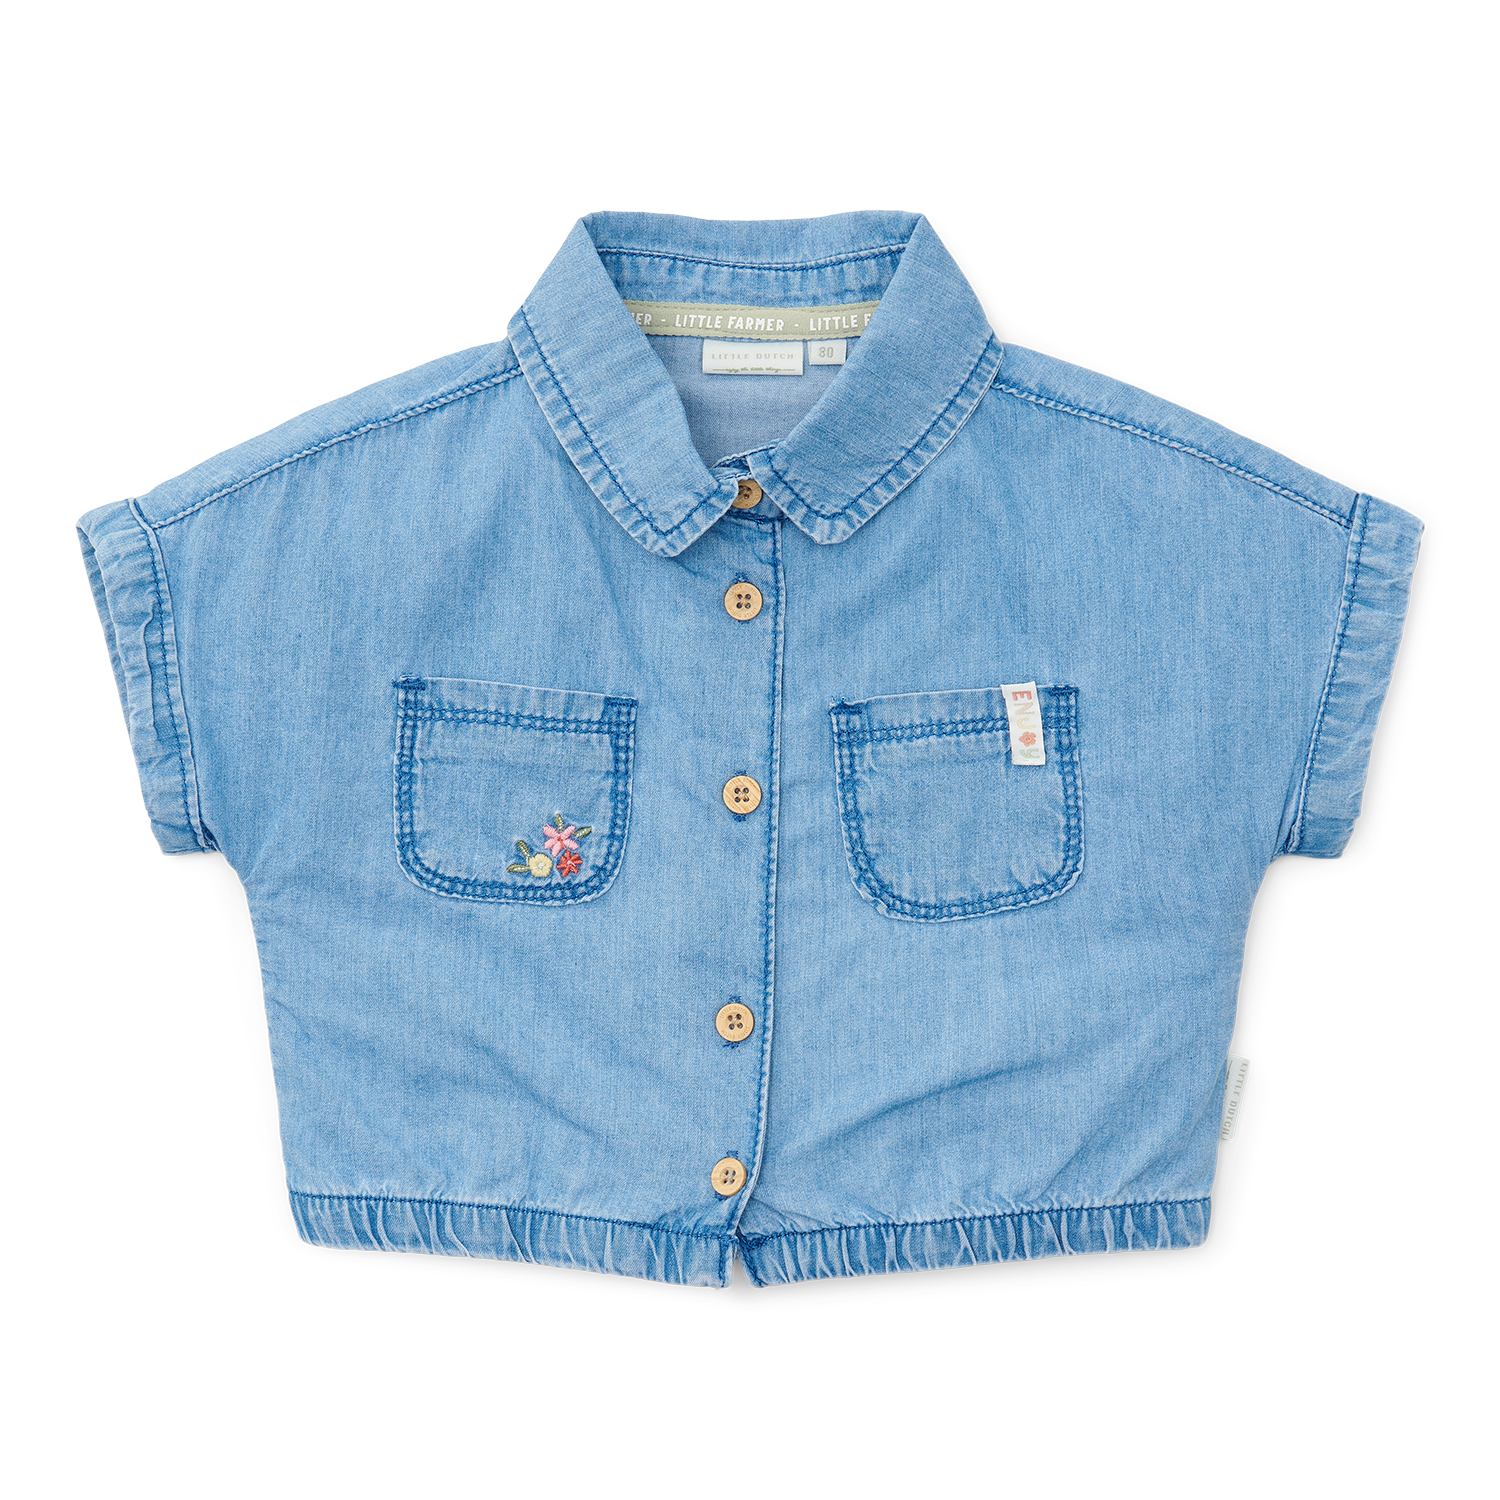 T-Shirt / Bluse Denim Little Farm jeans (Gr. 80)